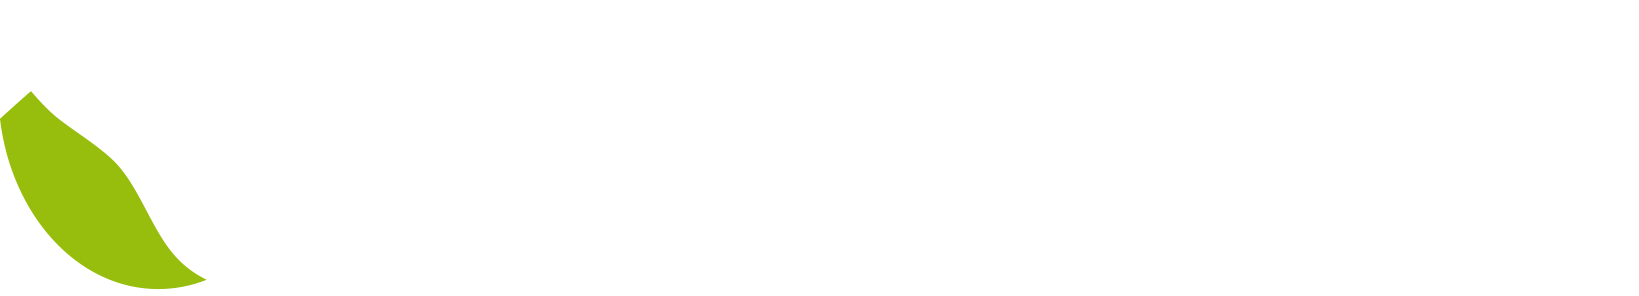 Bürgerinitiative Schutzgemeinschaft Schünholz auf dem Kiekeberg e.V.